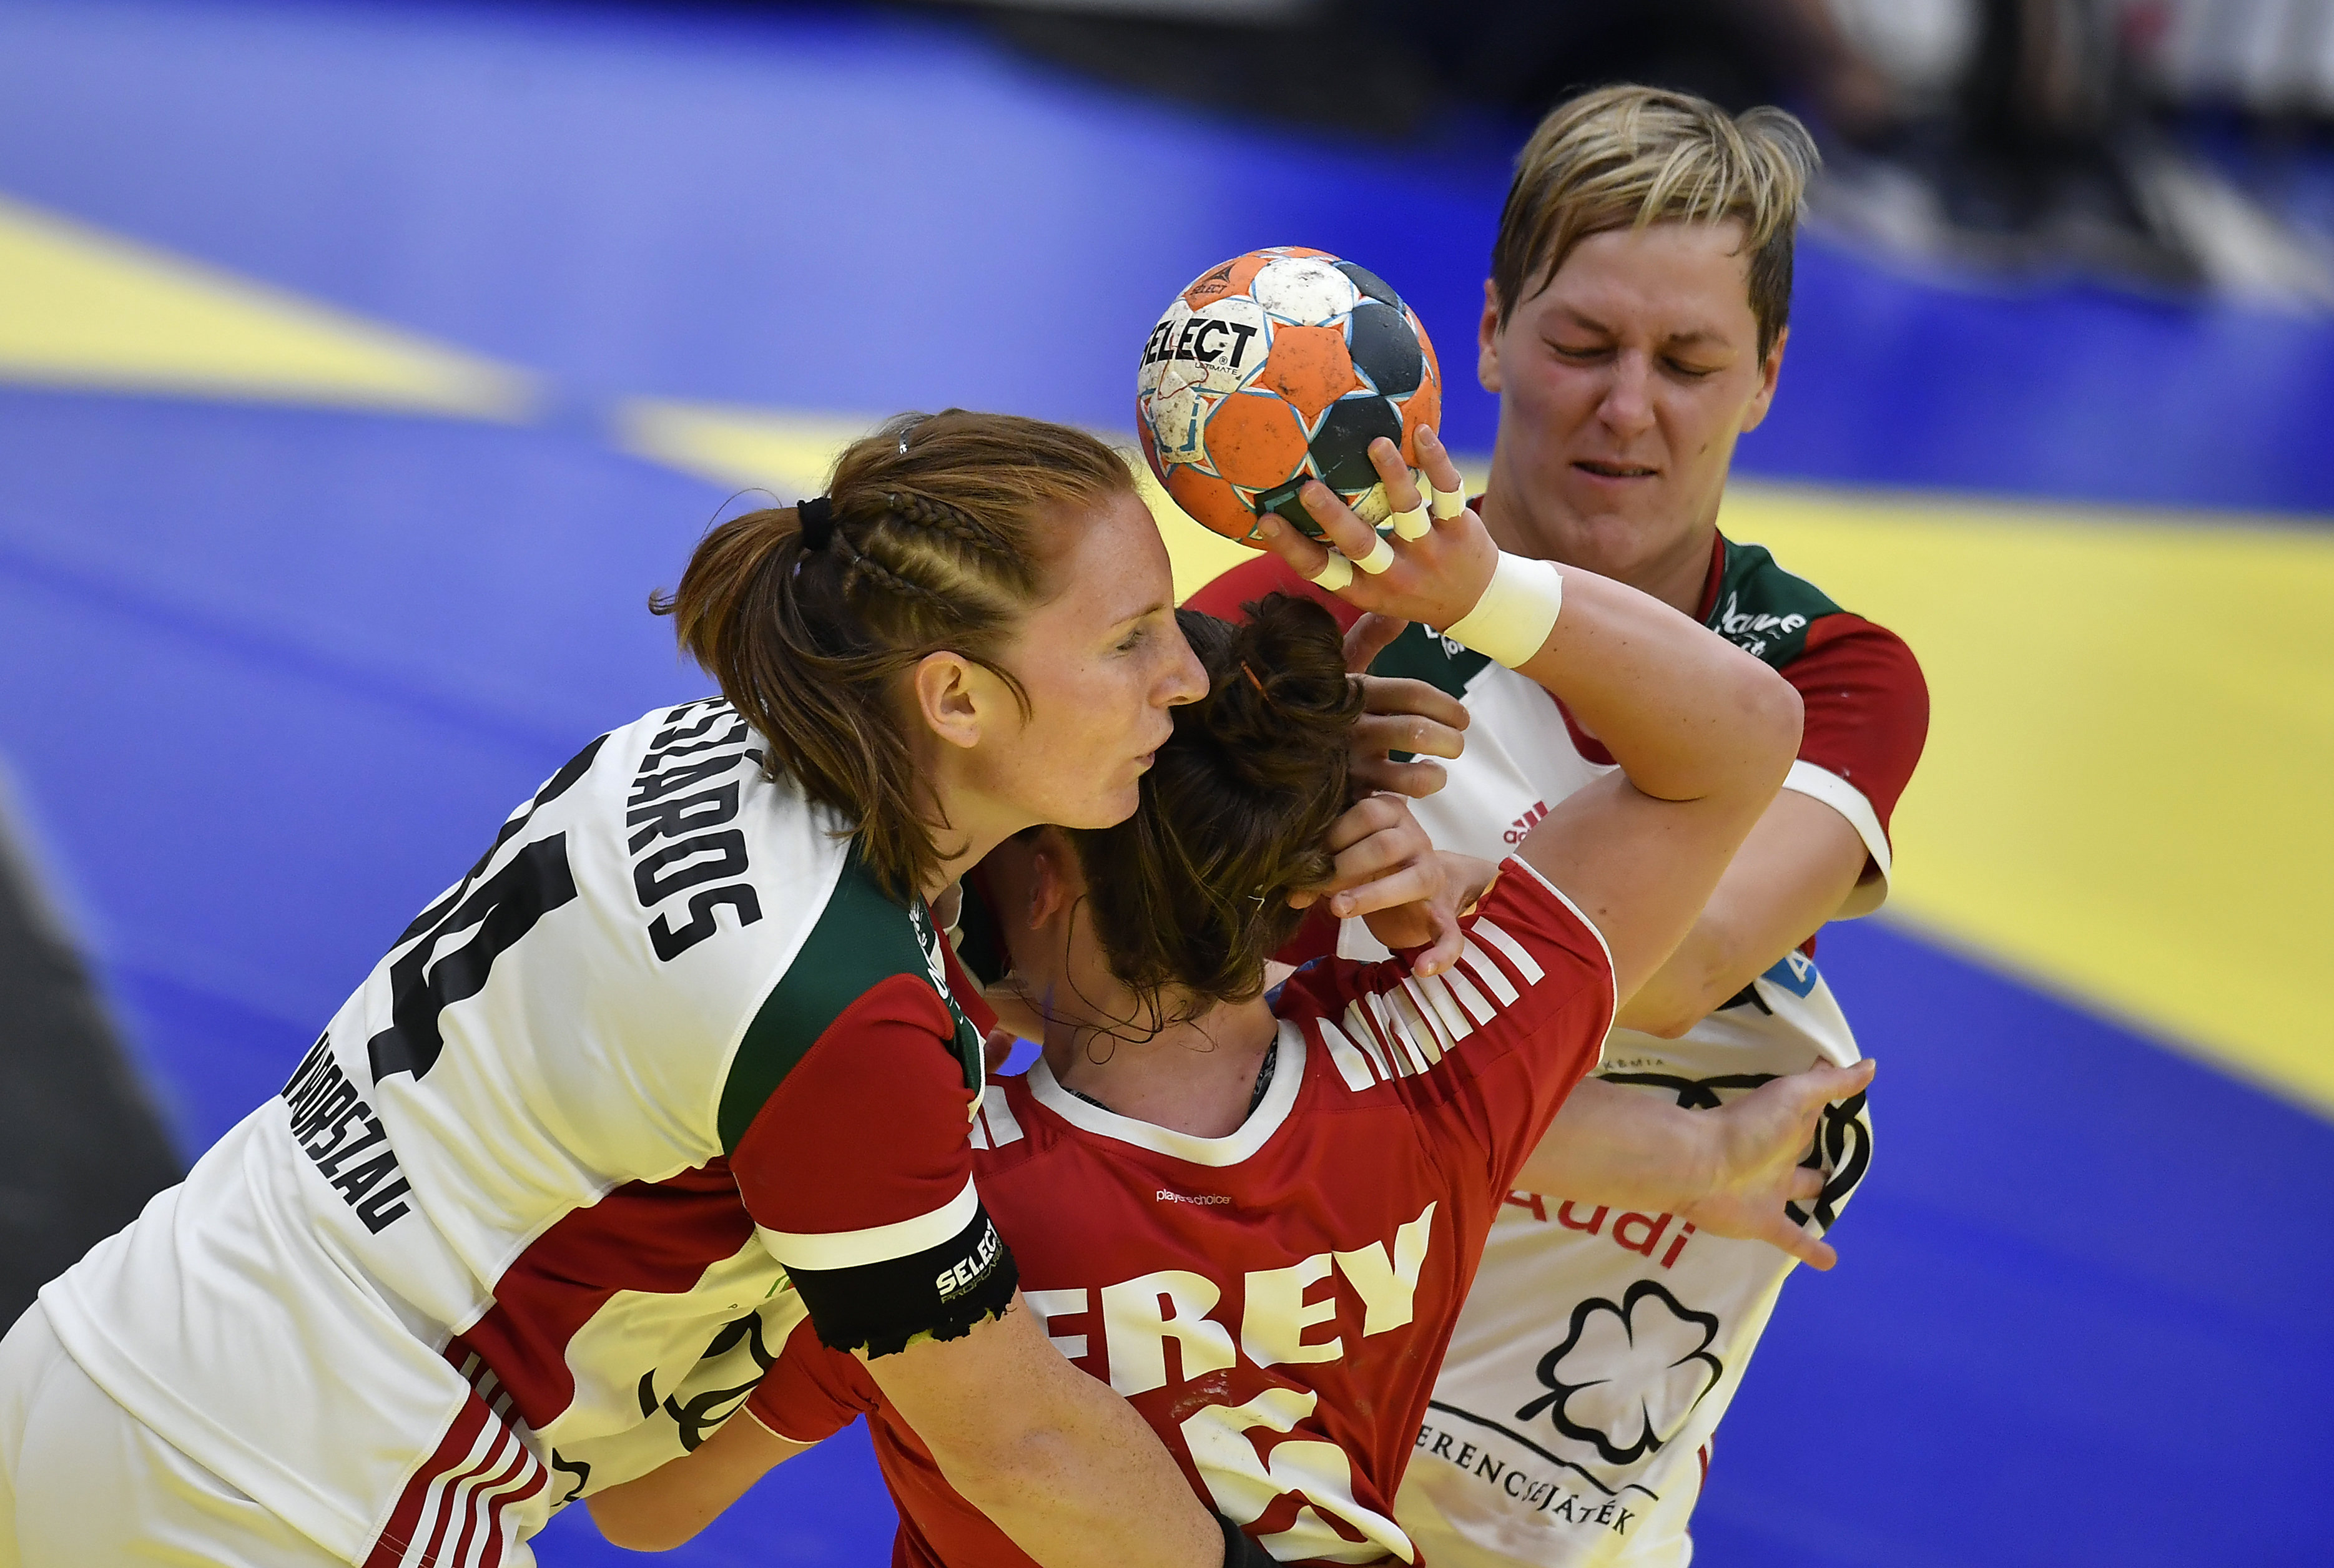 Magyarország rendezheti meg a női kézilabda-világbajnokságot 2027-ben